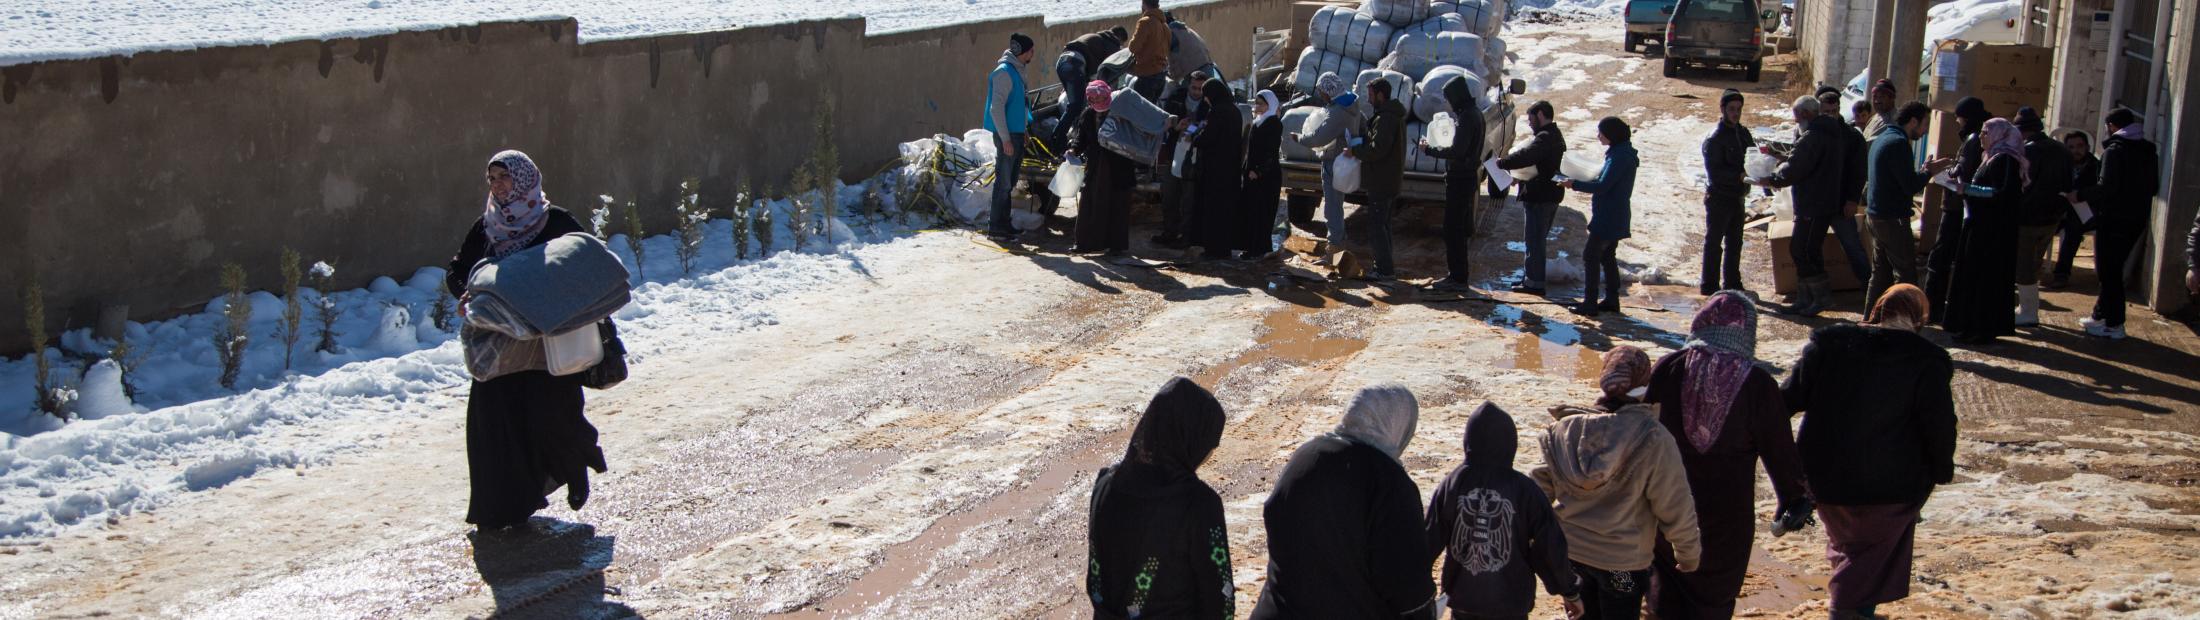 Miles de sirios hacen frente a un duro invierno en su huida hacia Líbano